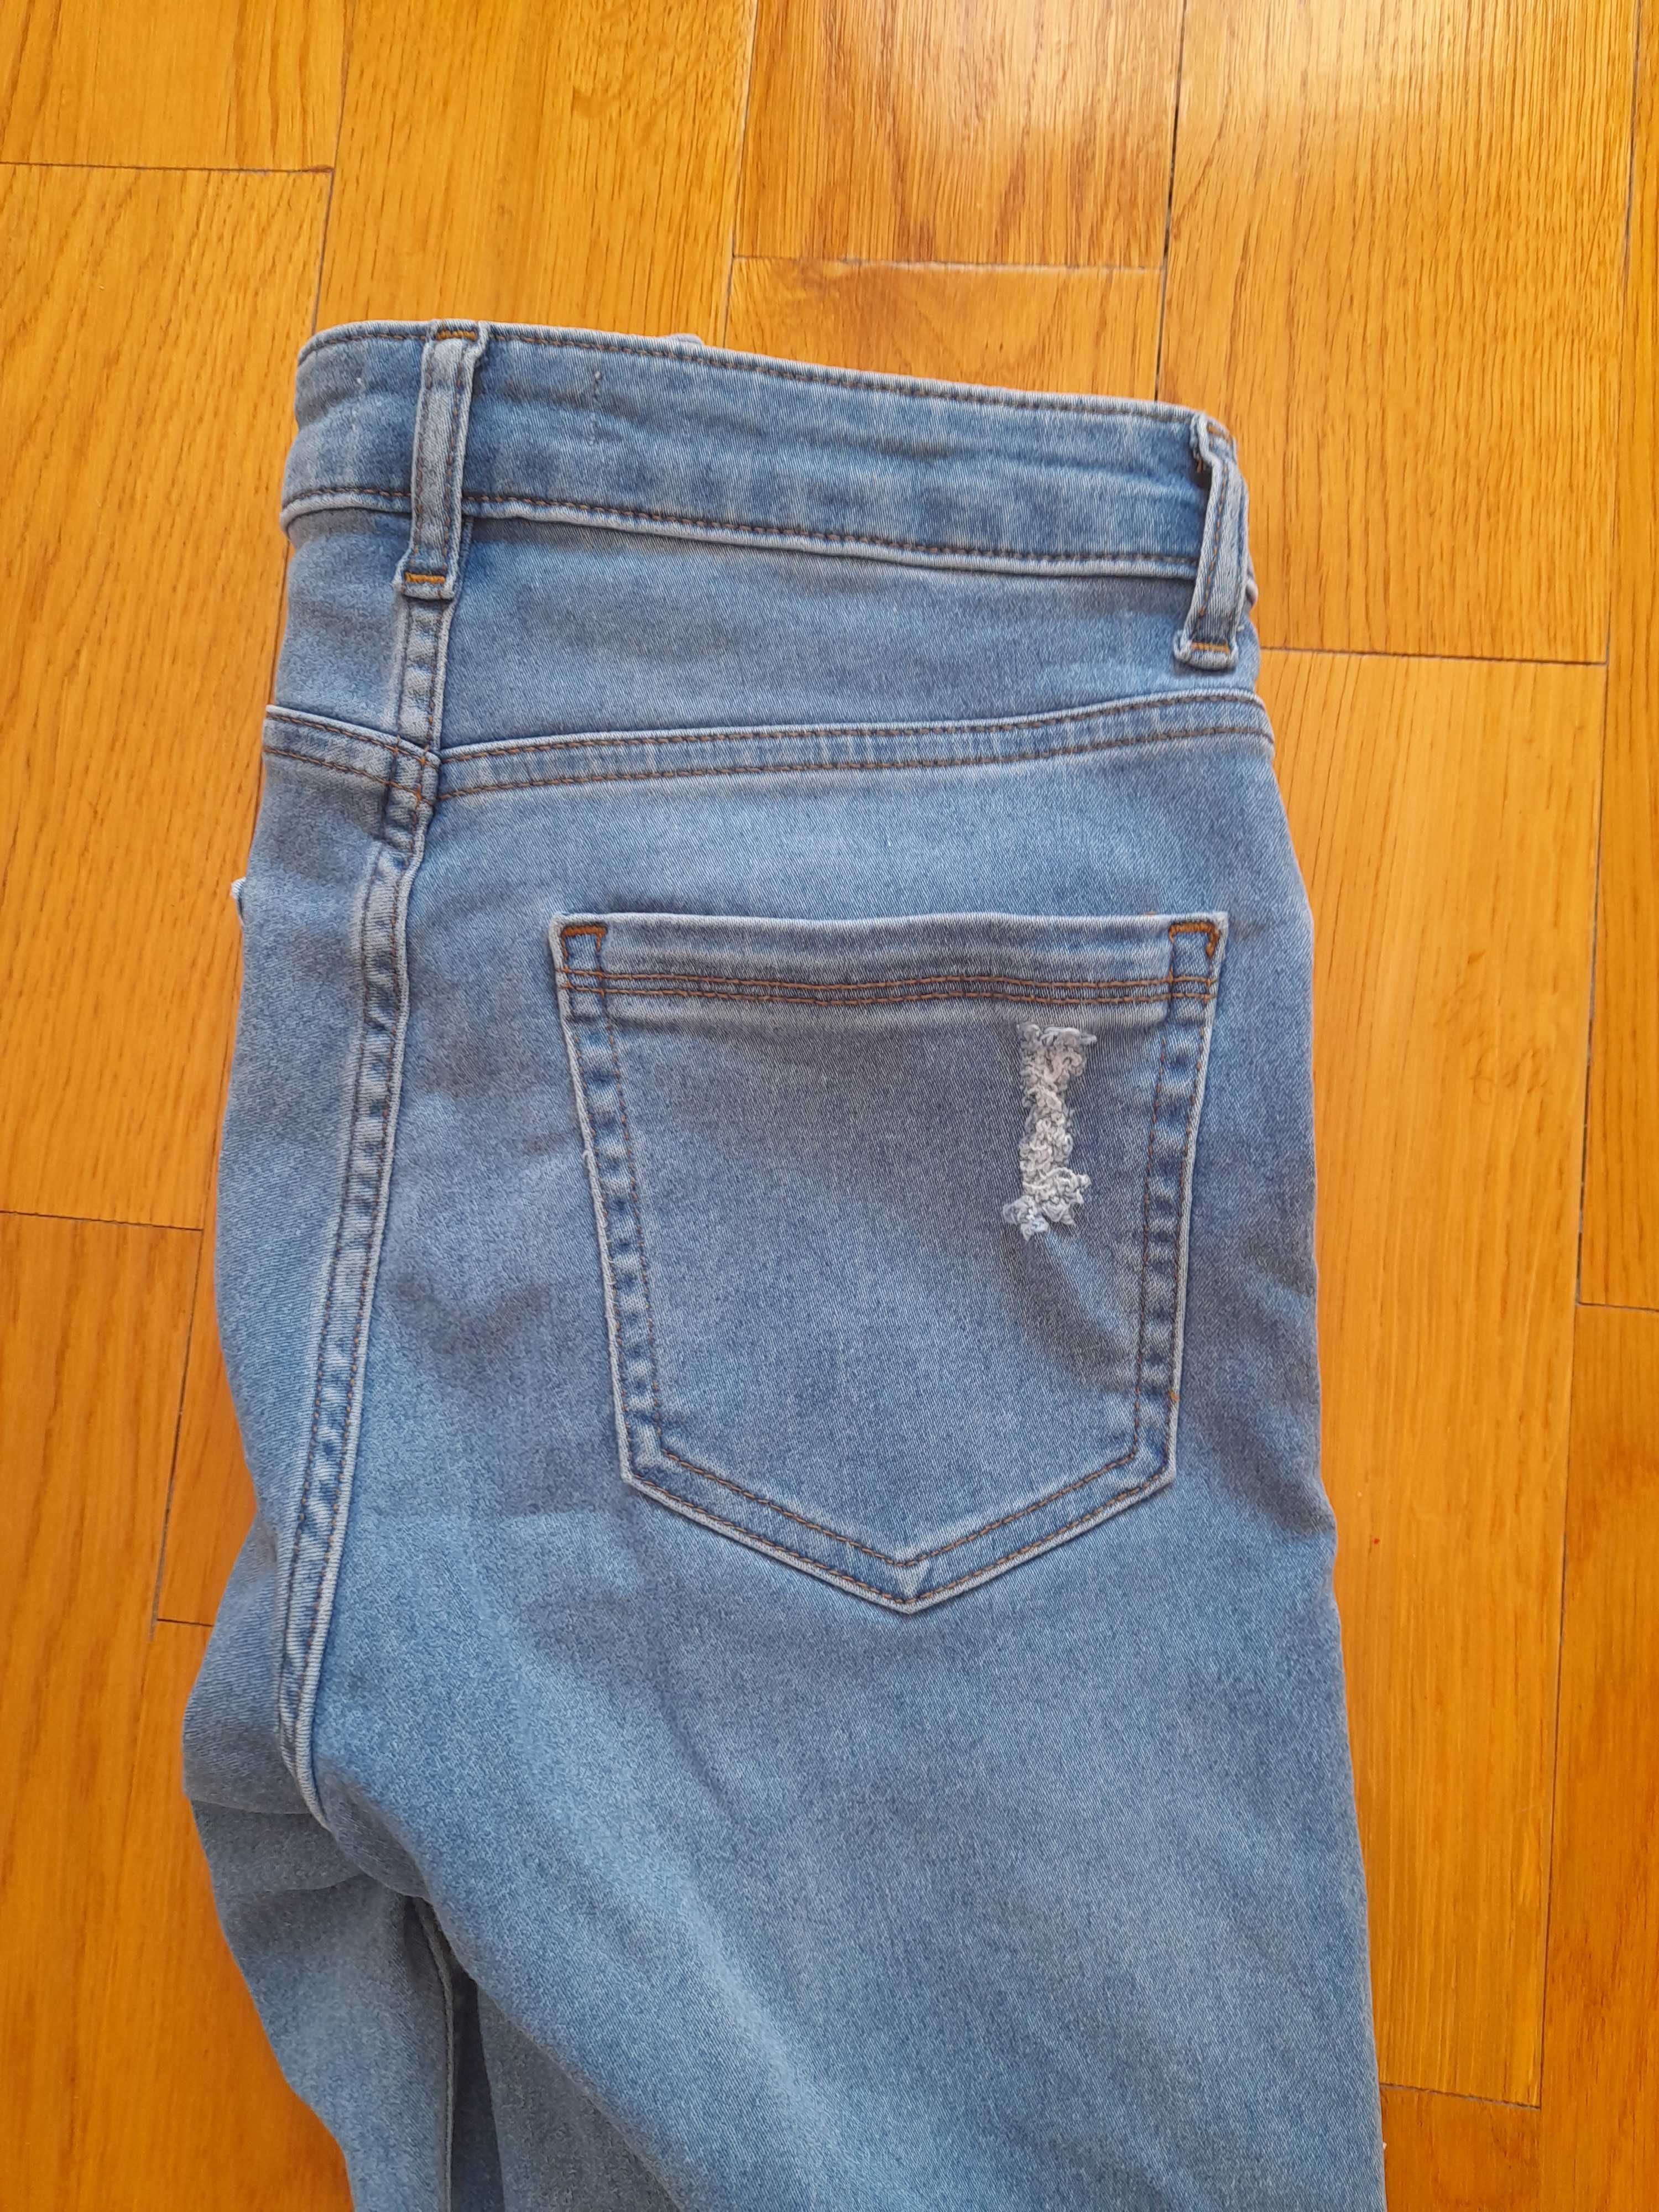 Piękne spodnie jeansowe z przetarciami Cropp r.S